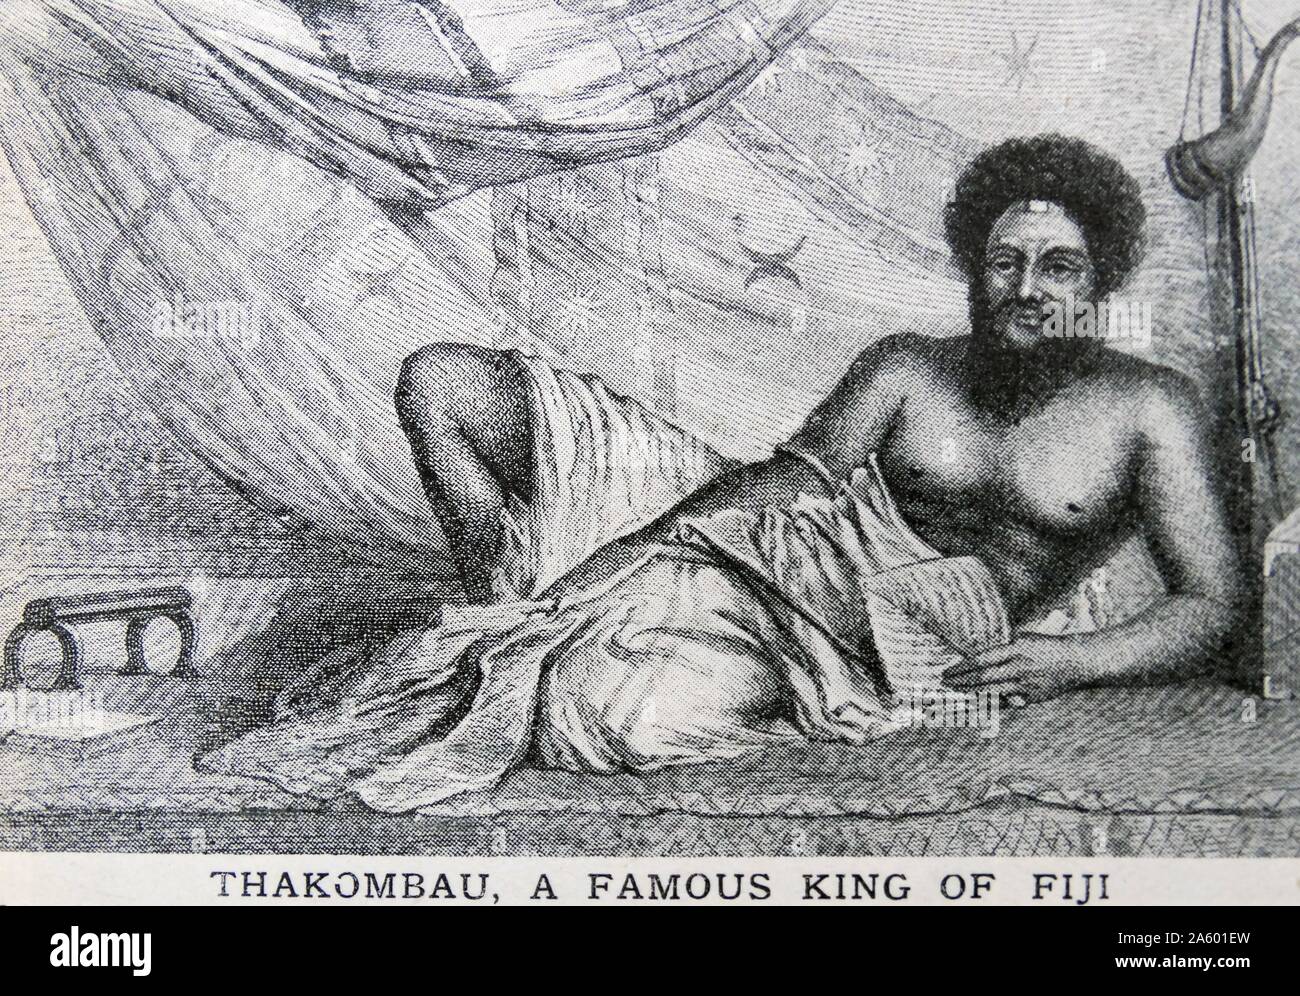 Thakombau, un famoso rey de Fiji. Él gobernó durante la mayor parte de las Islas Fiji desde 1852 a 1883. Las islas alcanzaron su mayor prosperidad bajo él y cedida voluntariamente su país al Gobierno británico en el año 1871. Foto de stock